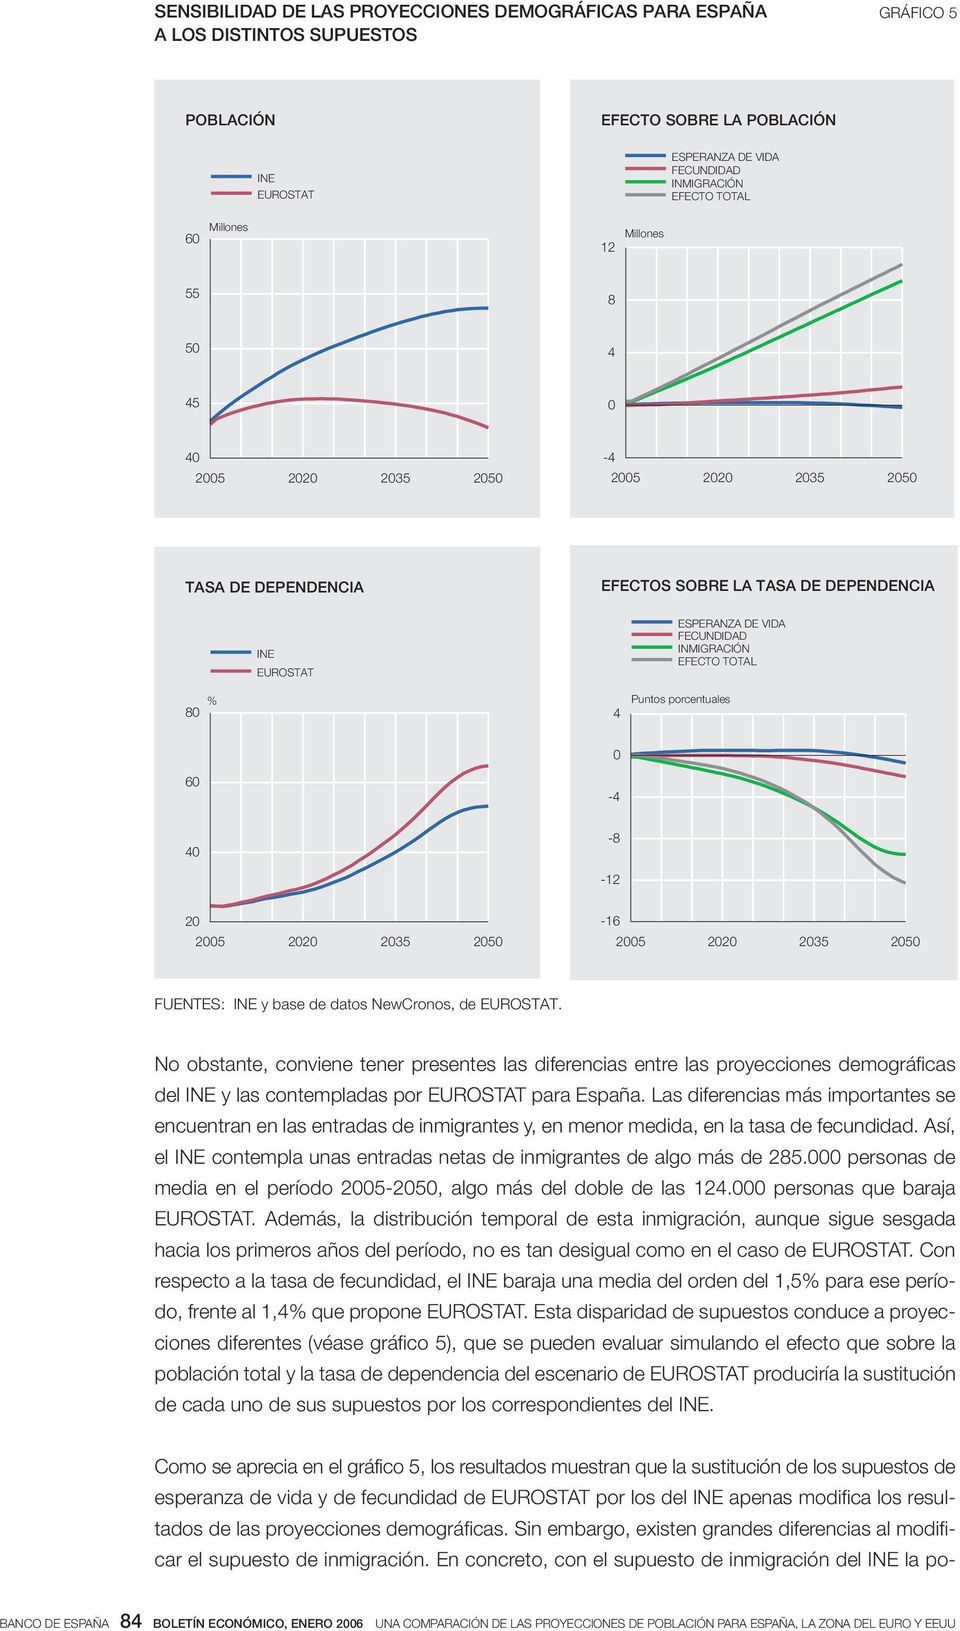 No obstante, conviene tener presentes las diferencias entre las proyecciones demográficas del INE y las contempladas por EUROSTAT para España.